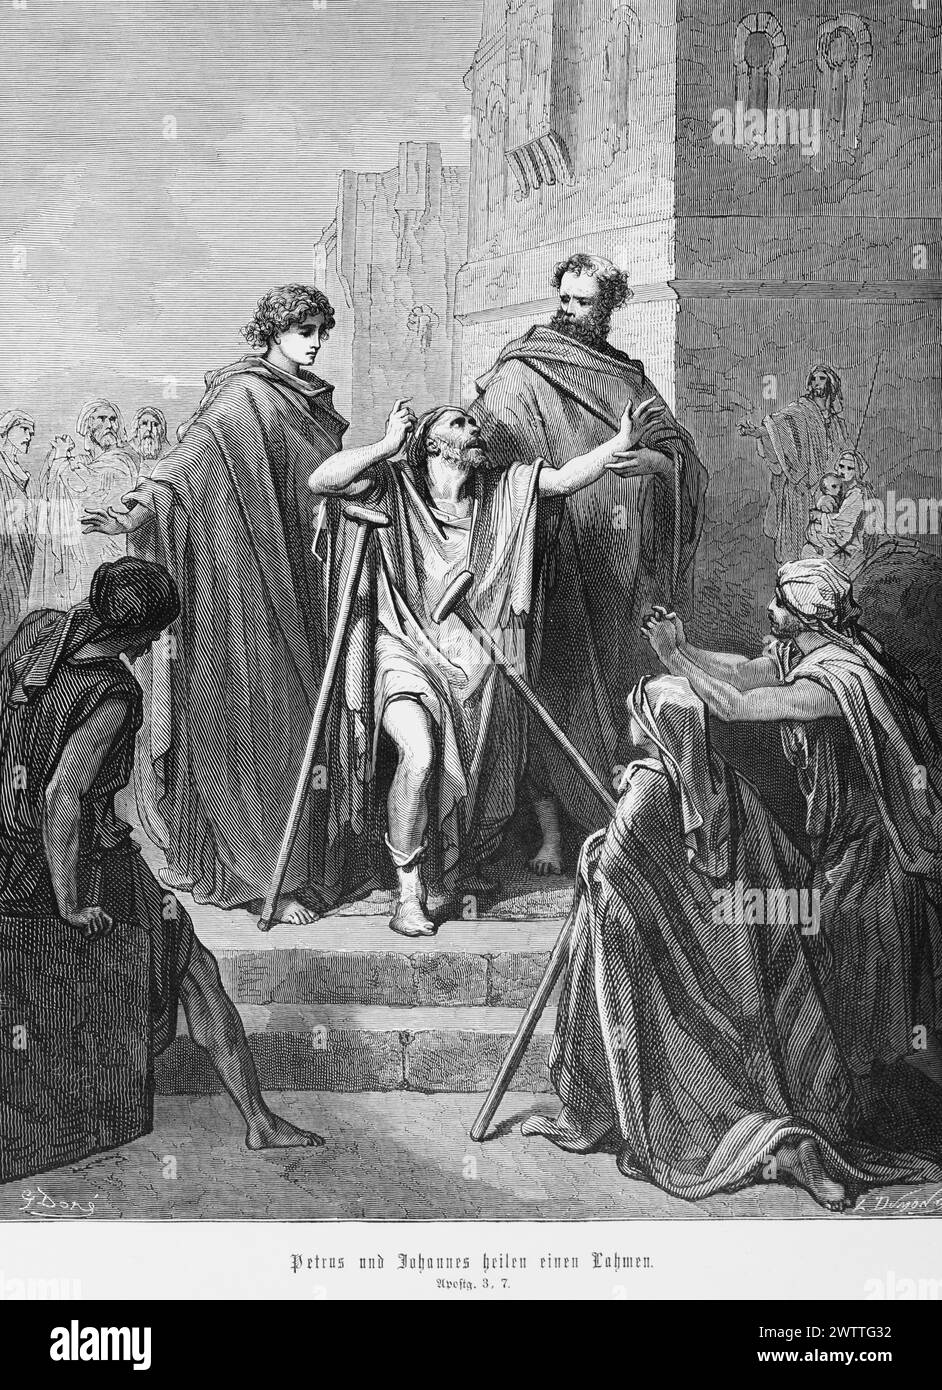 Peter und Johannes heilen einen lahmen Mann, Apostelgeschichte 3, Neues Testamemt, Bibel, historische Illustration 1886 Stockfoto